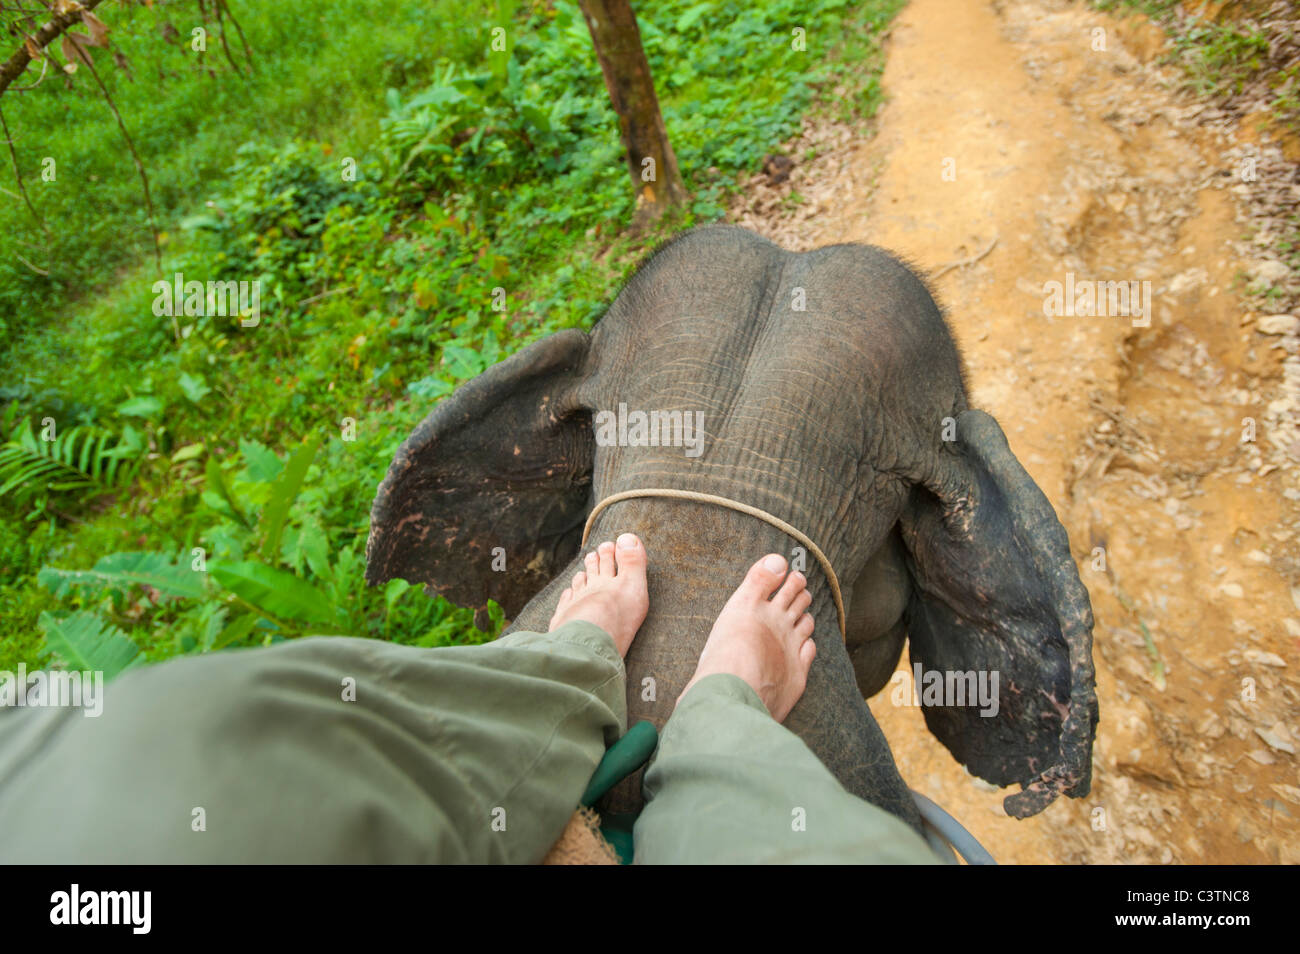 Elefanten reiten auf einem Elefanten eigener regelt Kraft Fahrt bewegen Steuern Führungslineal Anleitung Lenkung Elefant Mahout Bein Beine Stockfoto